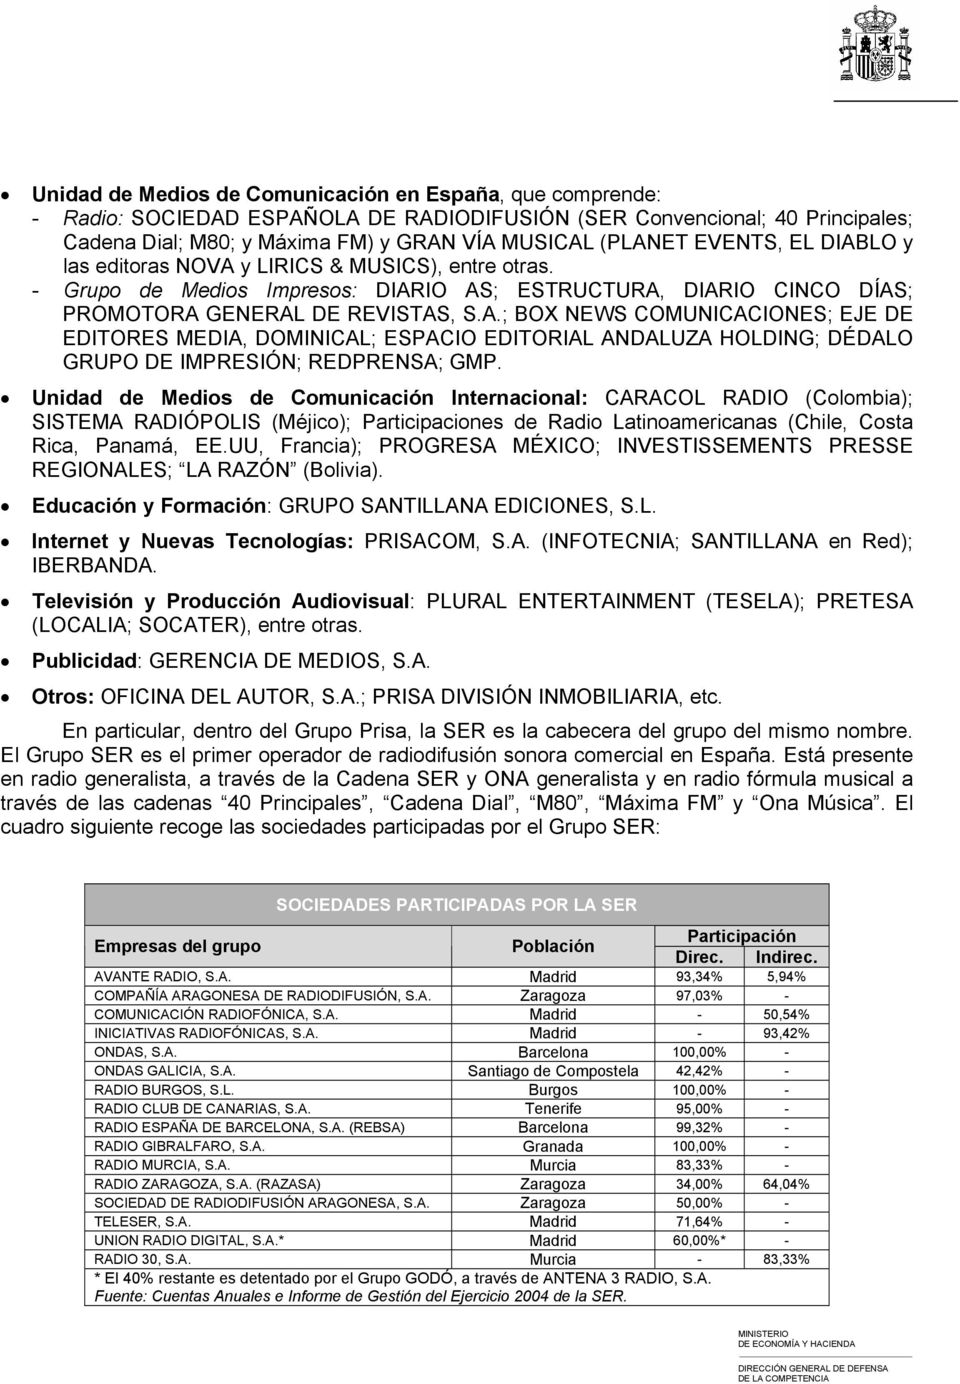 Unidad de Medios de Comunicación Internacional: CARACOL RADIO (Colombia); SISTEMA RADIÓPOLIS (Méjico); Participaciones de Radio Latinoamericanas (Chile, Costa Rica, Panamá, EE.